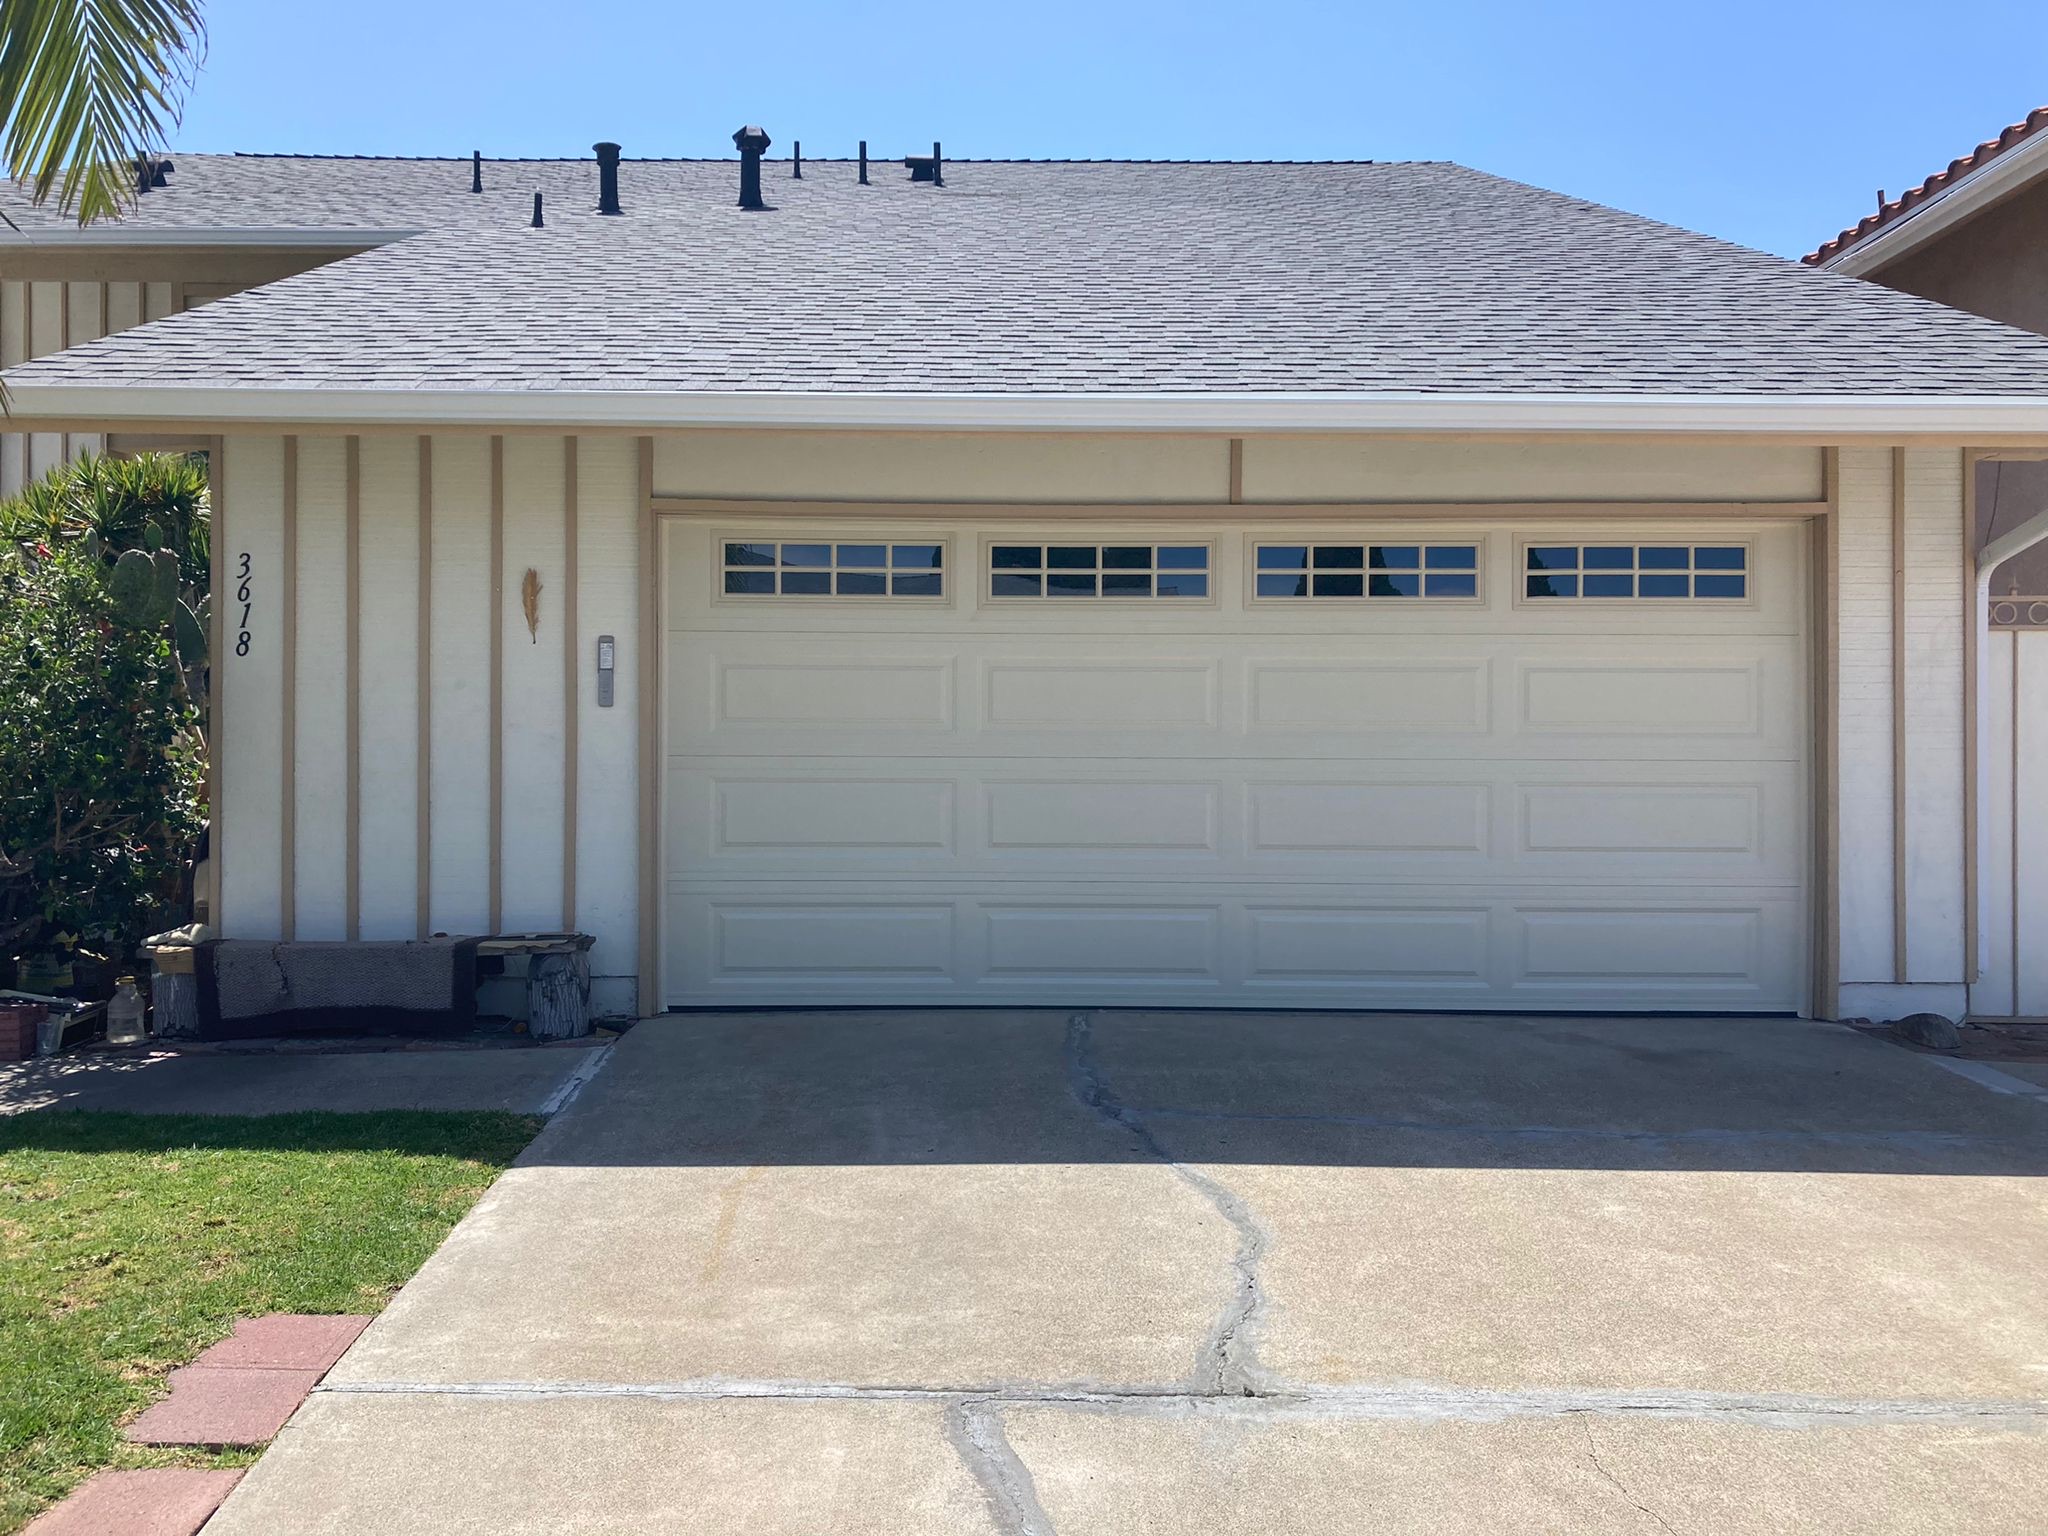 Garage Door Repair Santa Ana